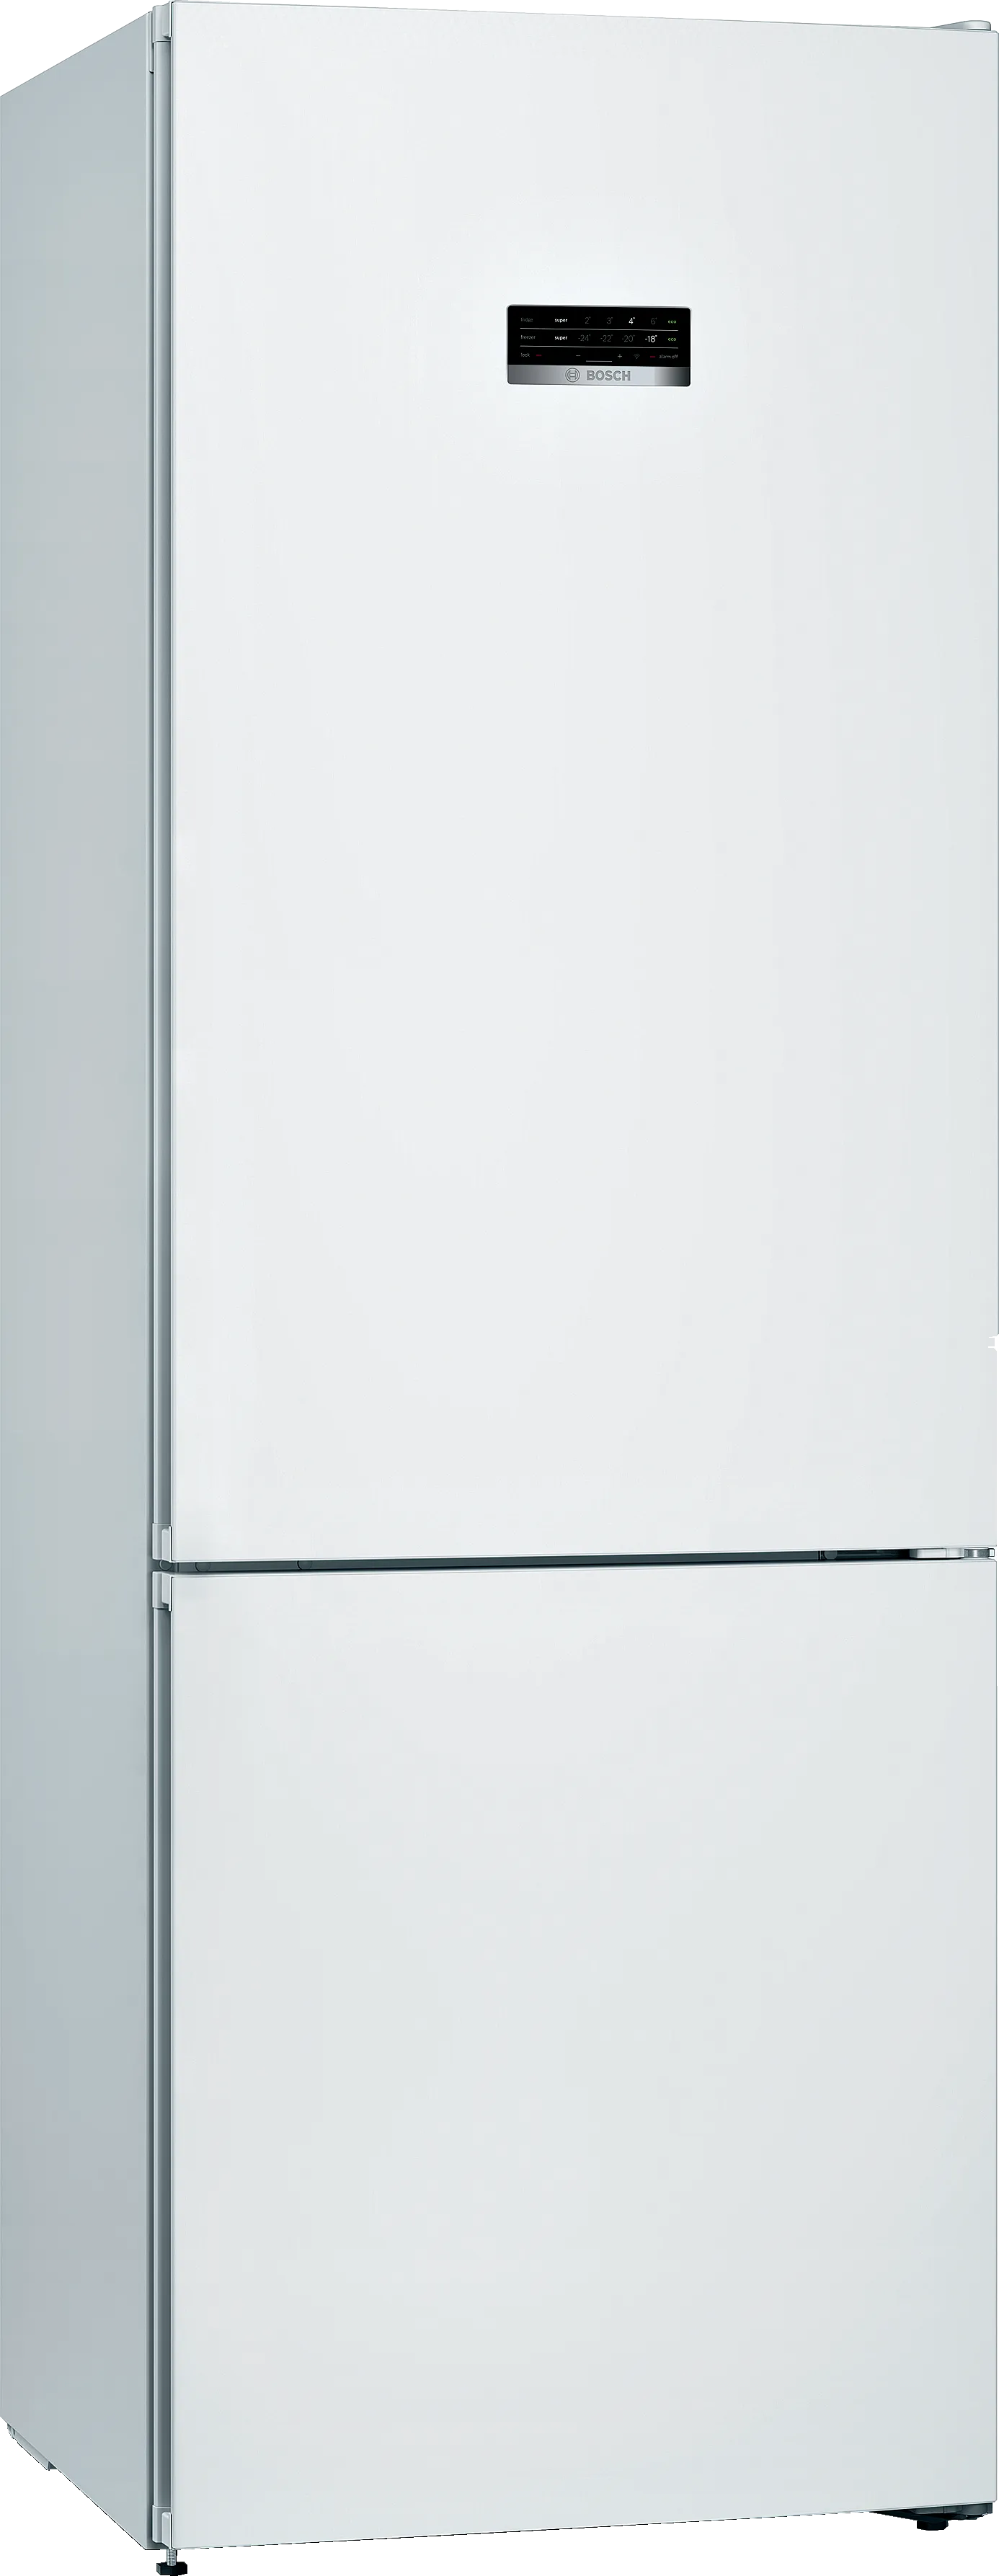 Serija 4 Laisvai statomas šaldytuvas-šaldiklis su šaldiklio skyriumi apačioje 203 x 70 cm Baltas 